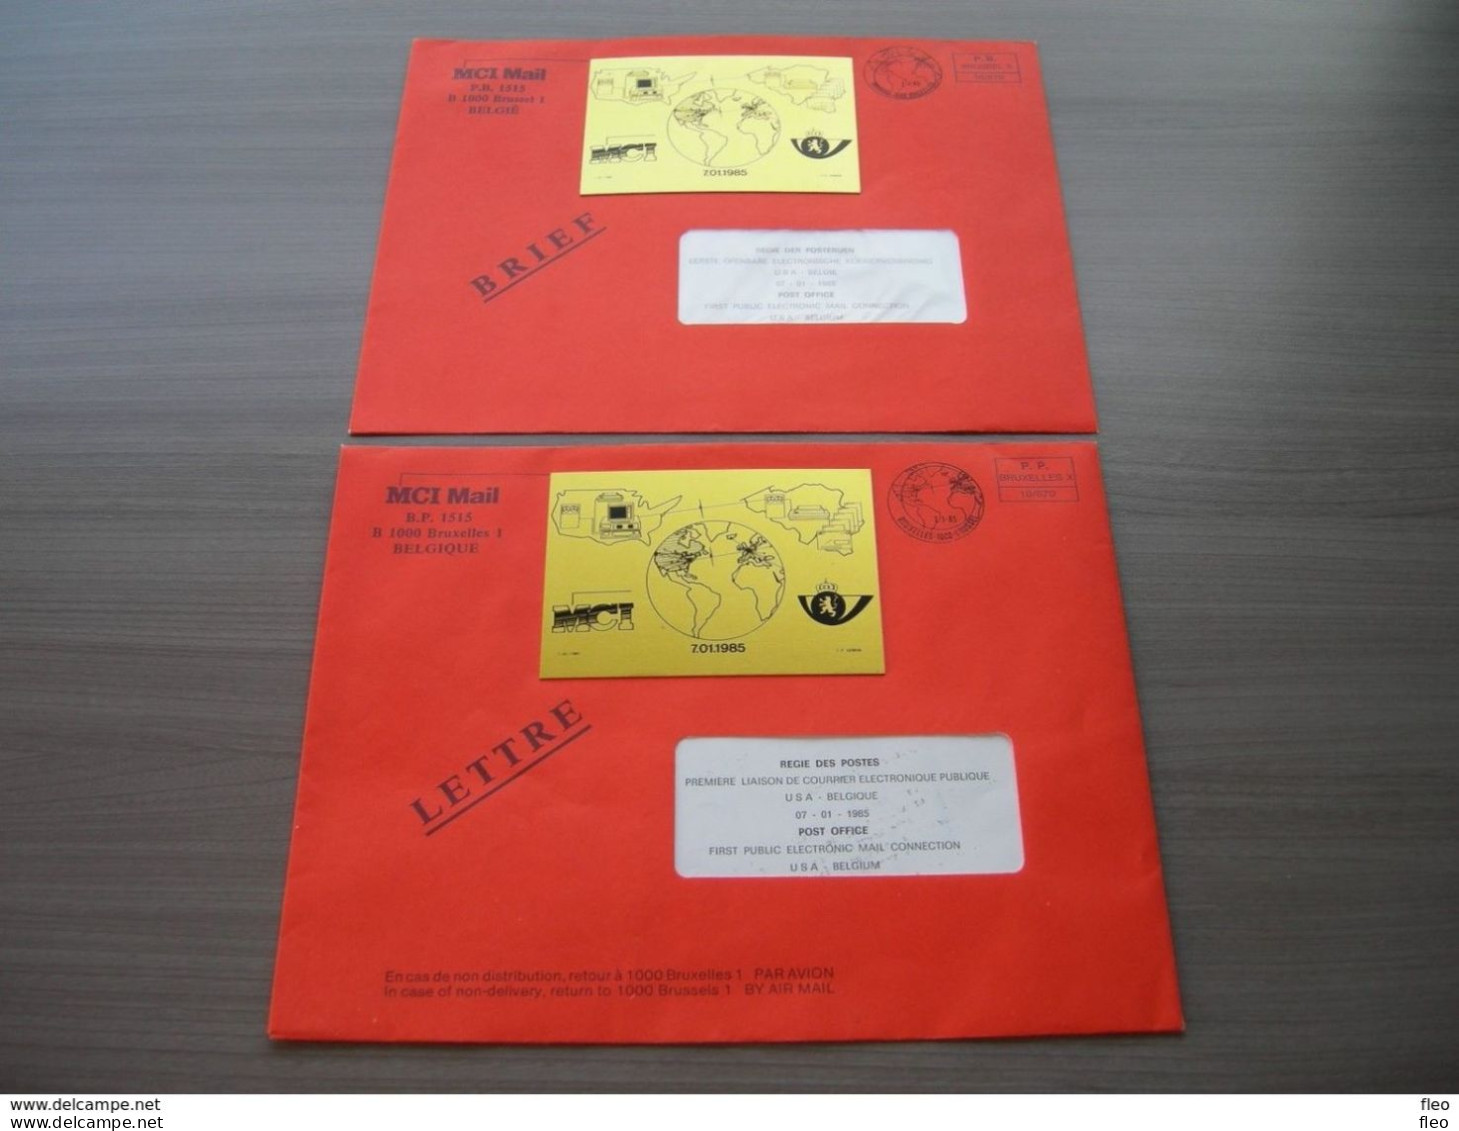 BELG.1985 Postdienst - Eerste Wereldverbinding Van Openbare Electronische Koerier 7/1/85 ,de 2 Omslagen FR&NL = ZELDZAAM - Post Office Leaflets